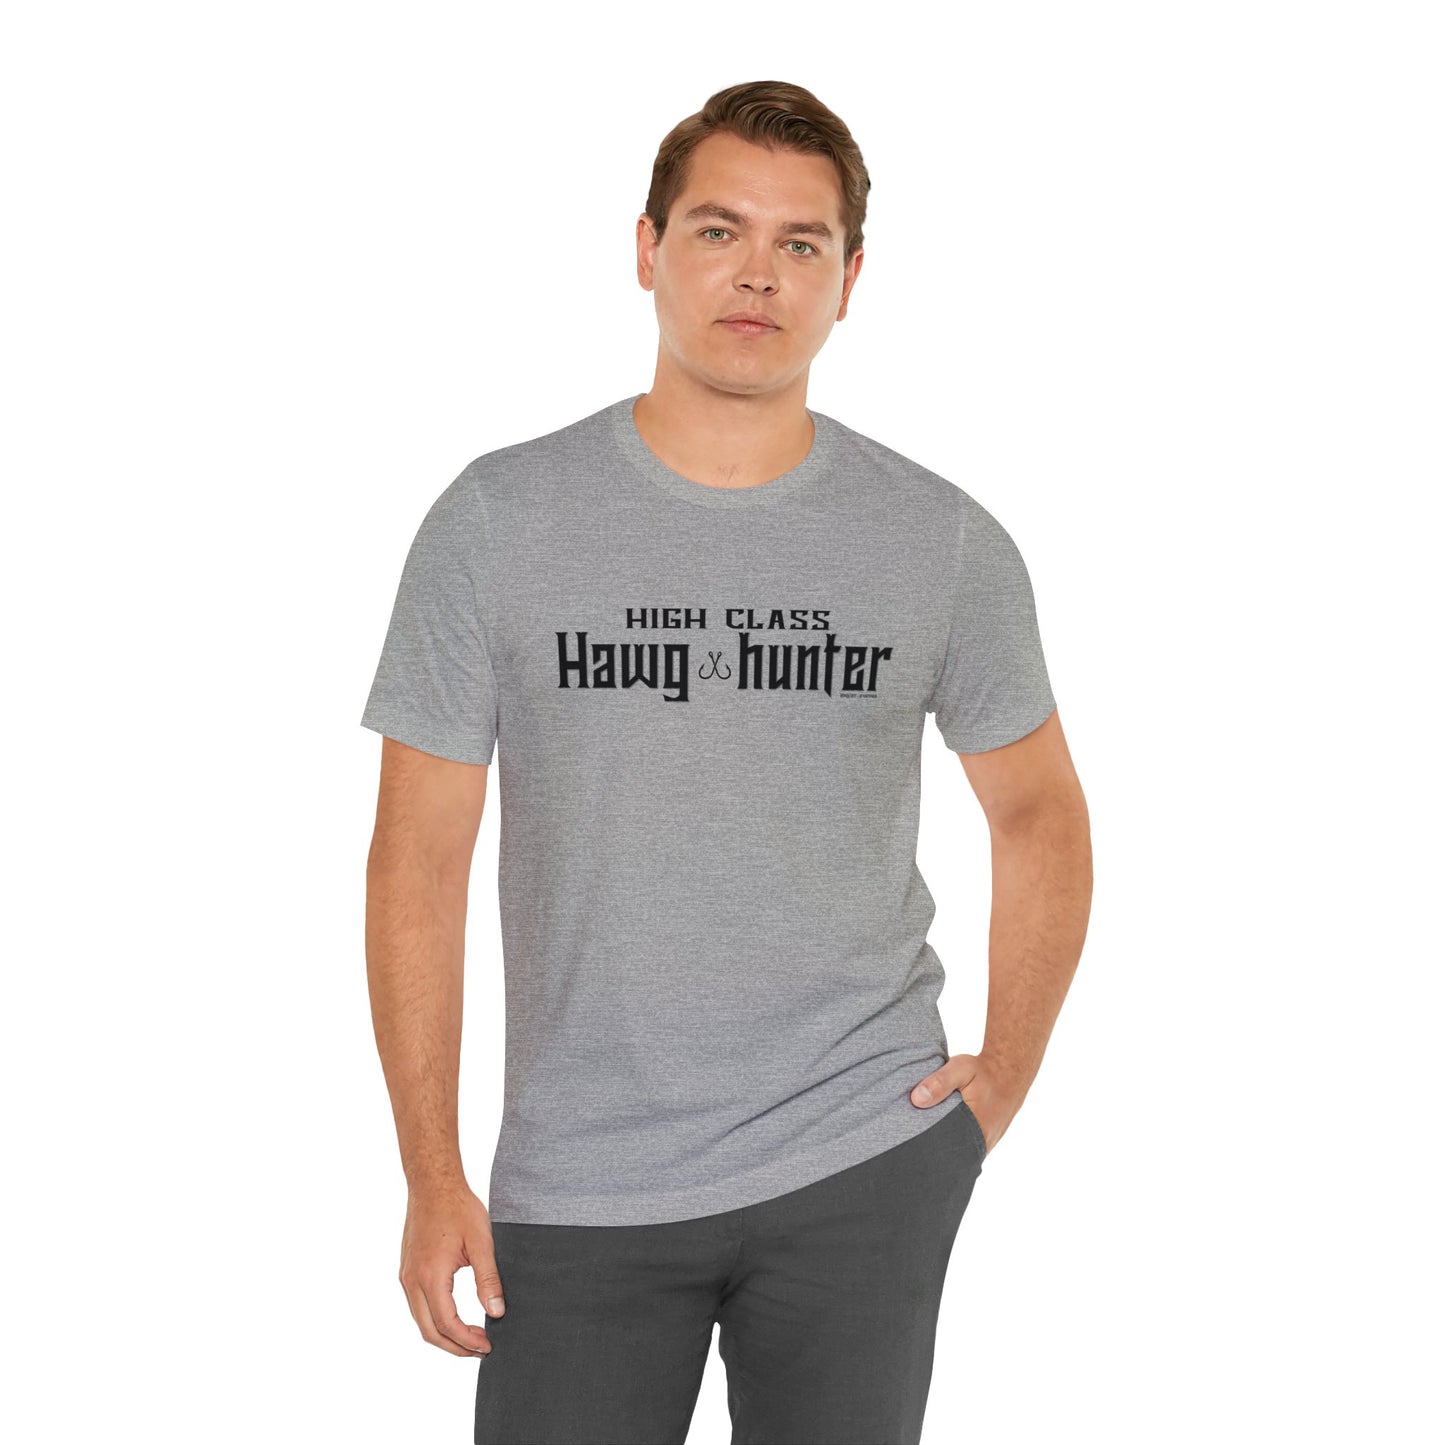 High Class Hawg Hunter T-Shirt